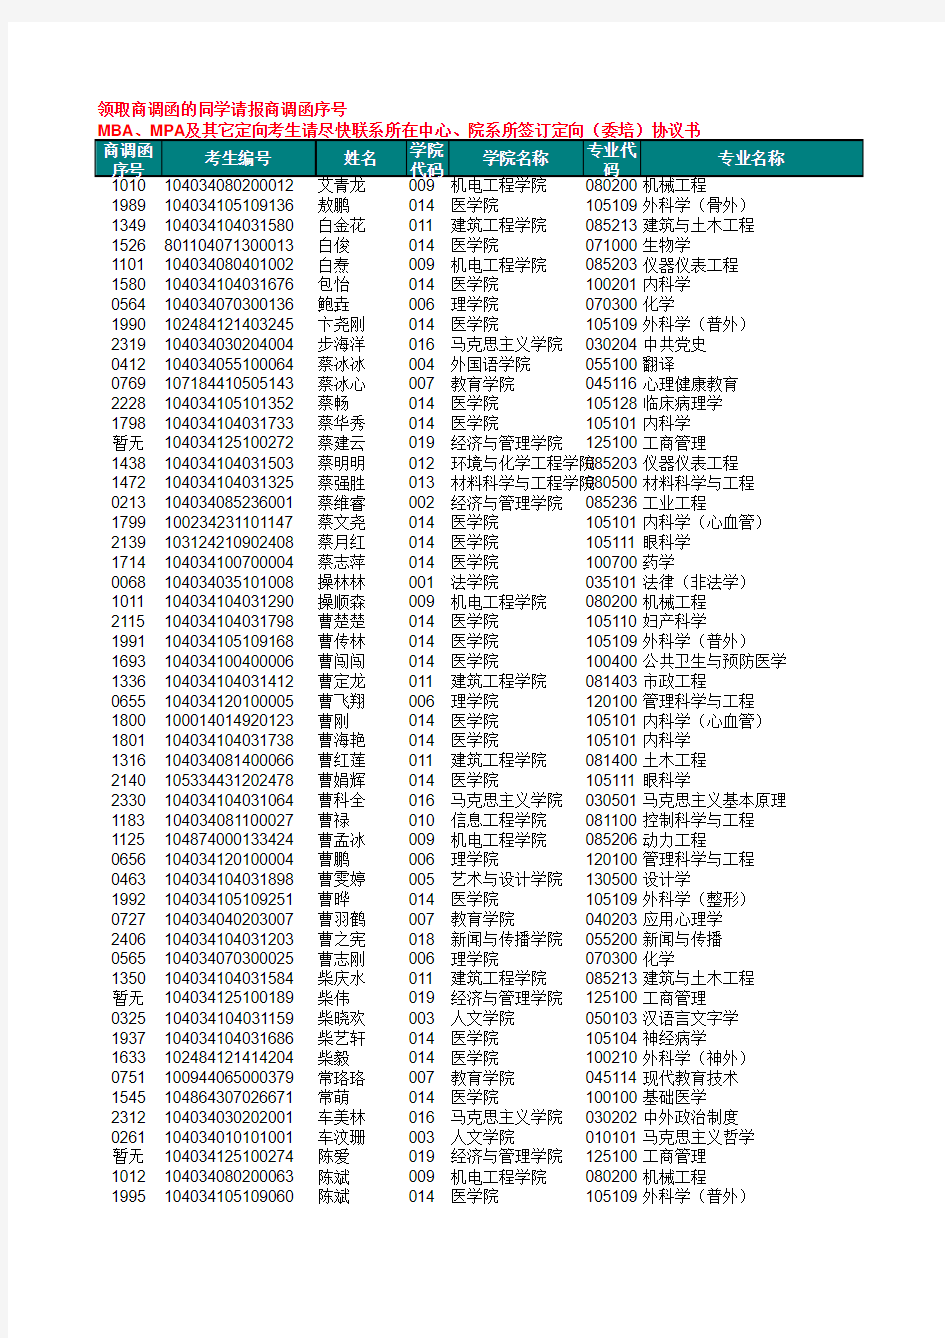 南昌大学2014级硕士研究生拟录取名单xls